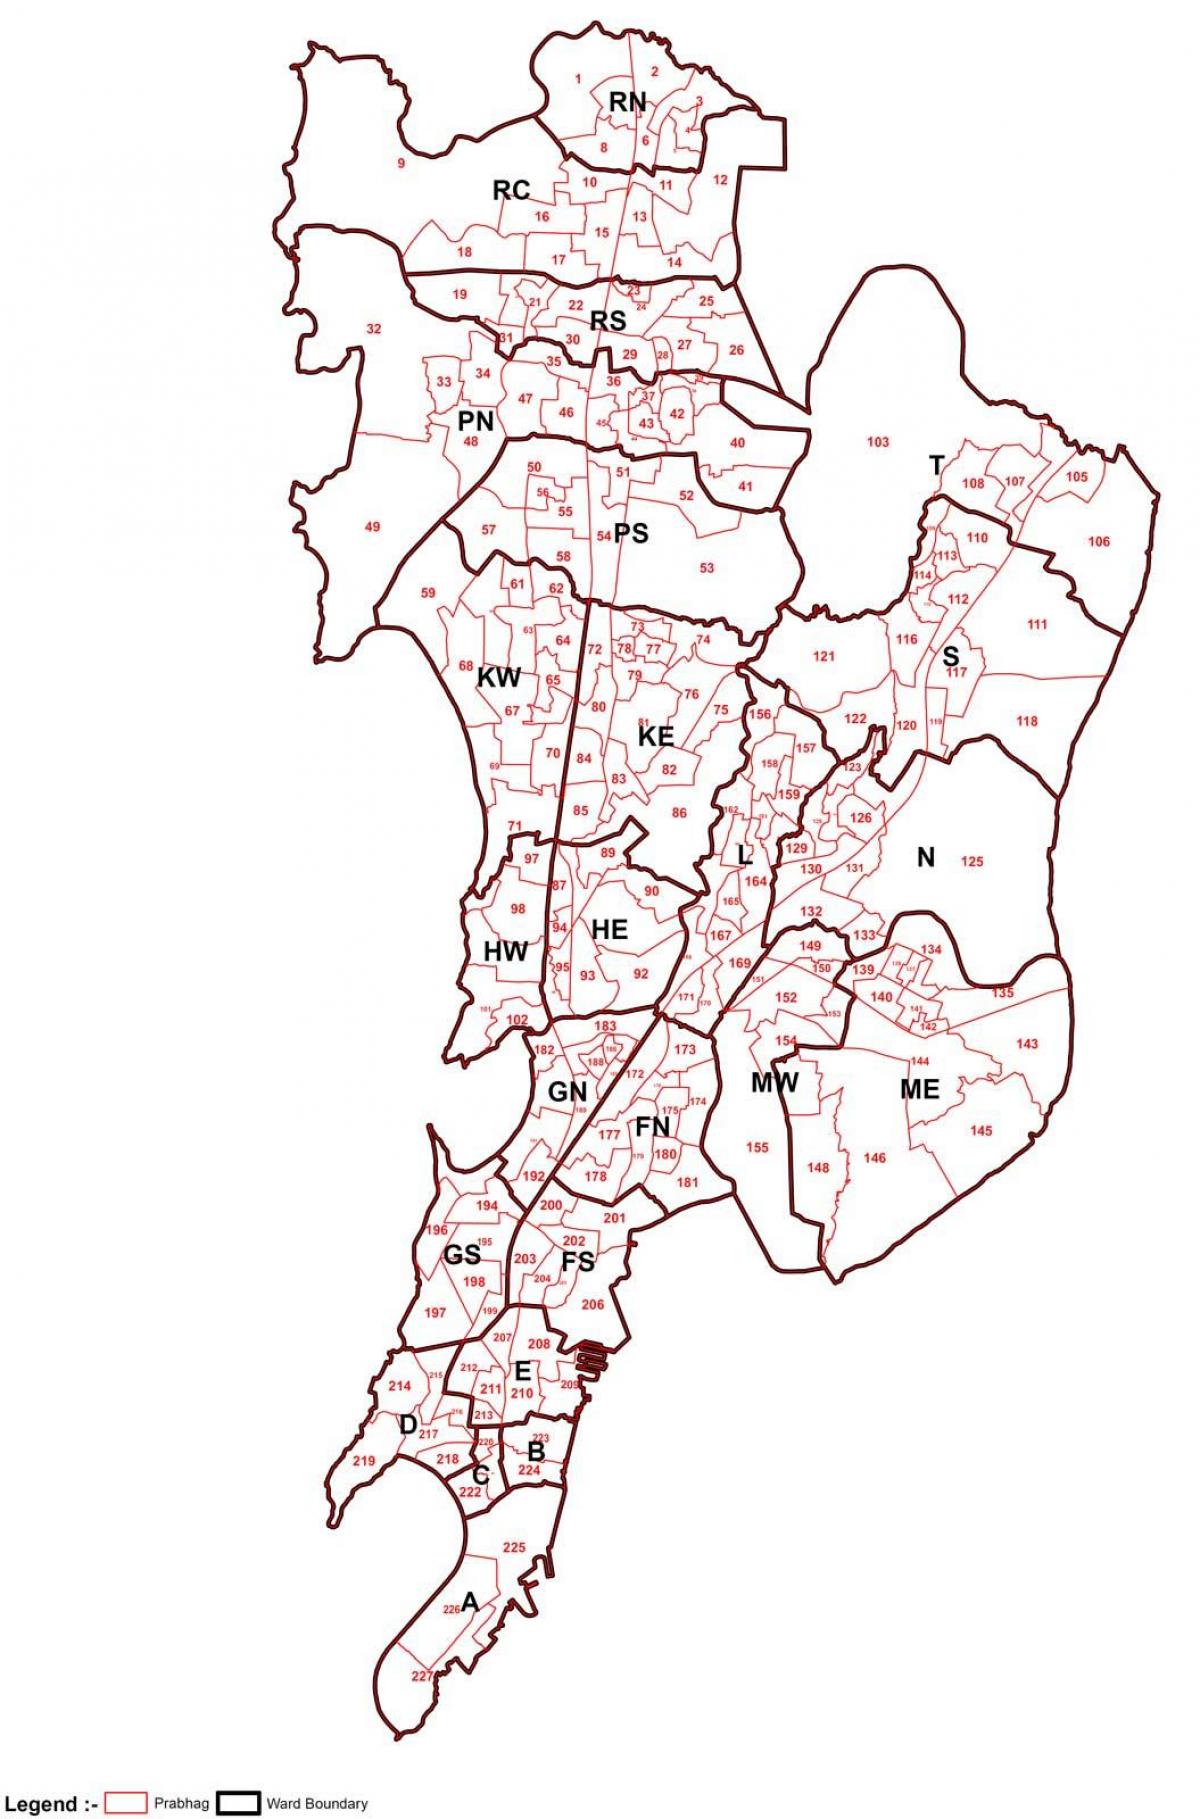 Mumbai harita alan bilge